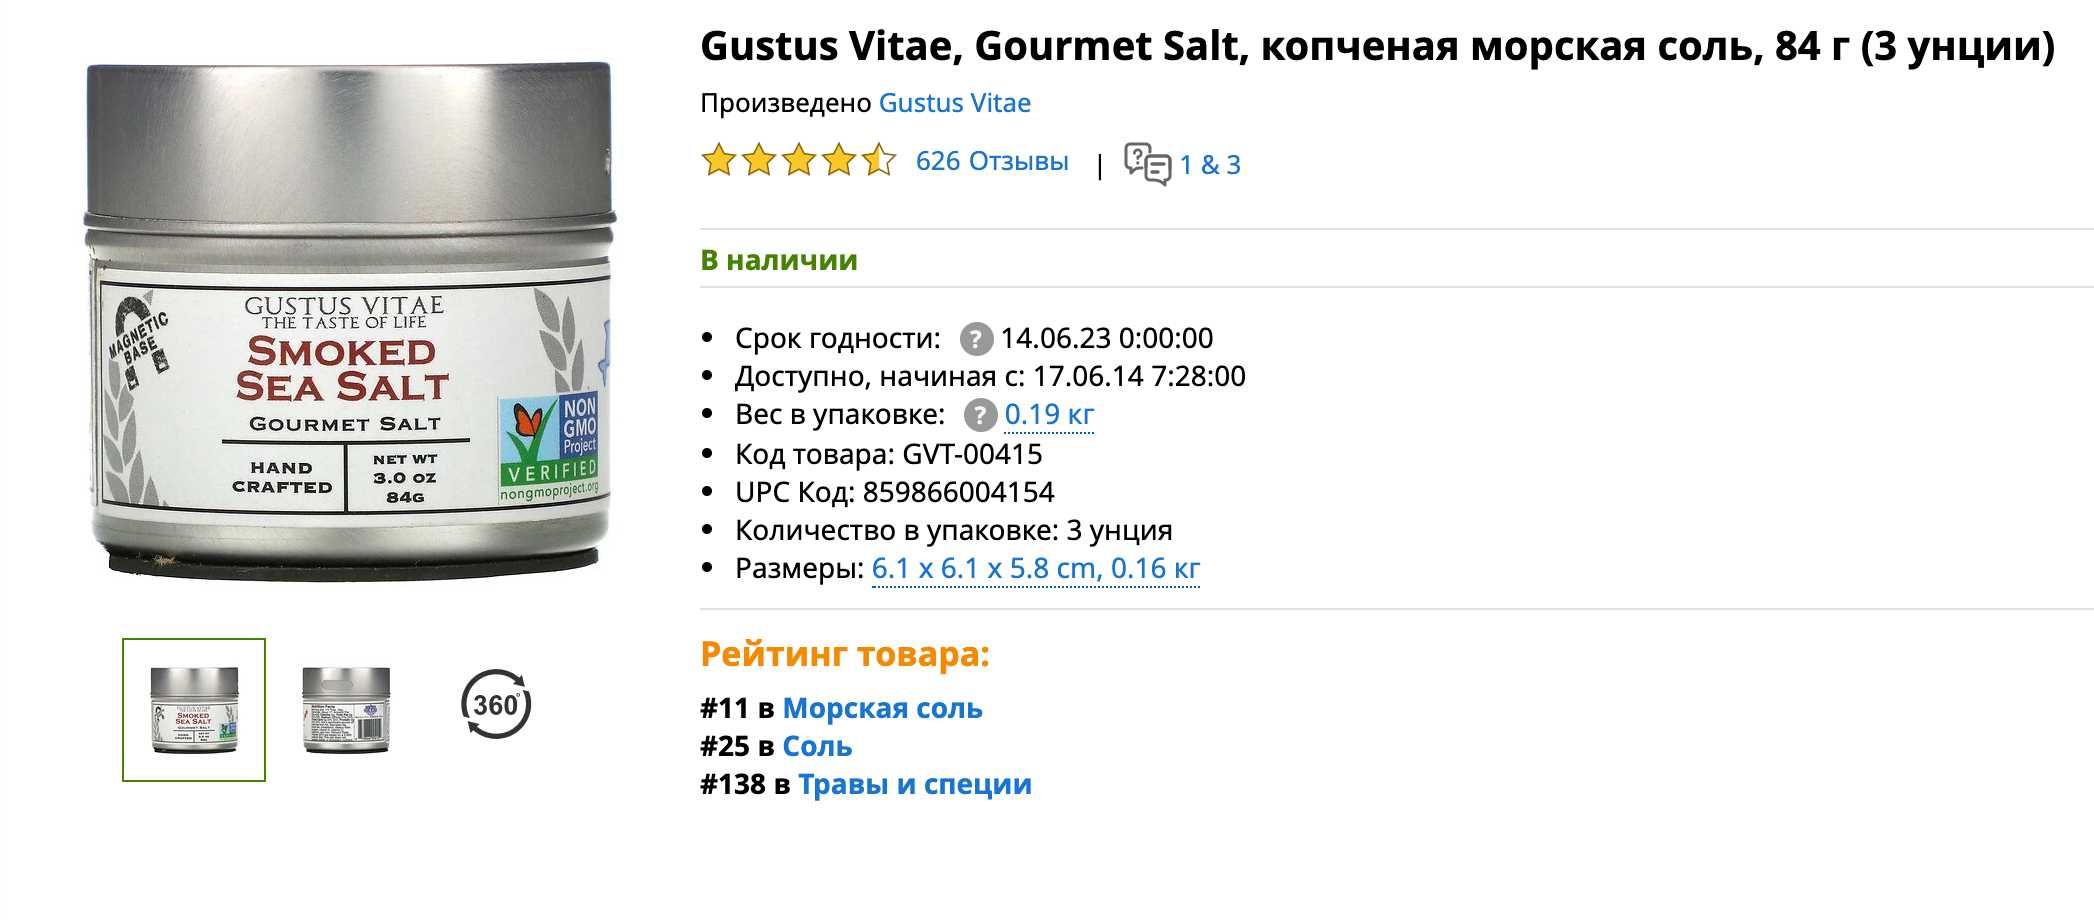 НОВОЕ Gustus Vitae, Gourmet Salt, копченая морская соль, 84 г